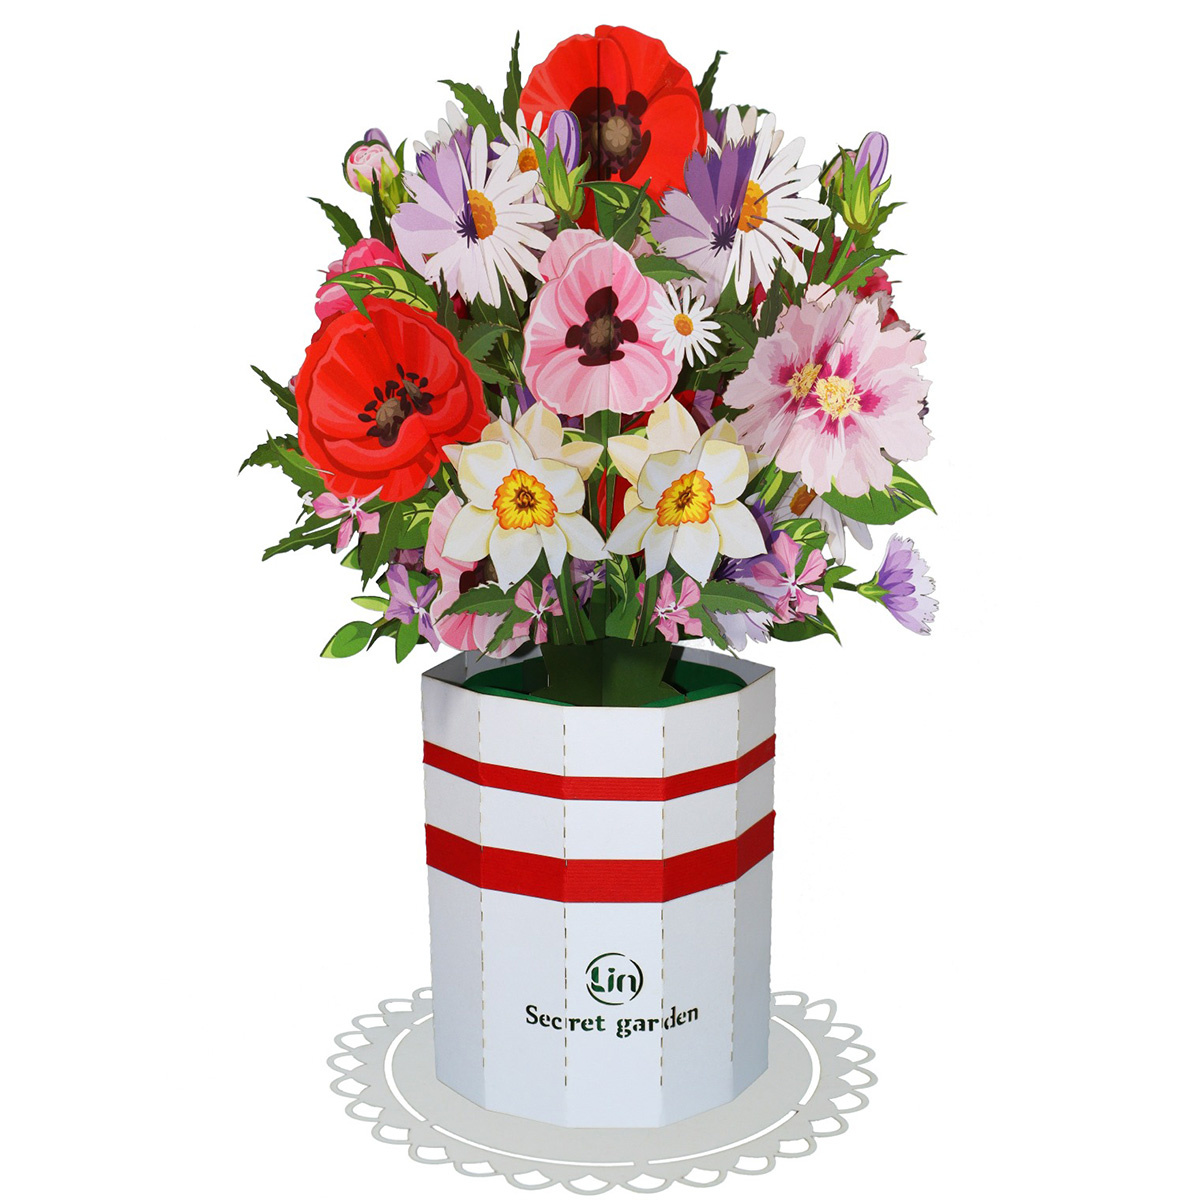 LINPOPUP Pop-Up Blumenstrauß, Handgemachter Blumen aus Papier inkl. Vase u. Unterteller, als Geschenk zum Geburtstag, Muttertag, Jubiläum, Gute Besserung, Danke, Papierblumenstrauß, LIN17907, LINPopUp®, N802